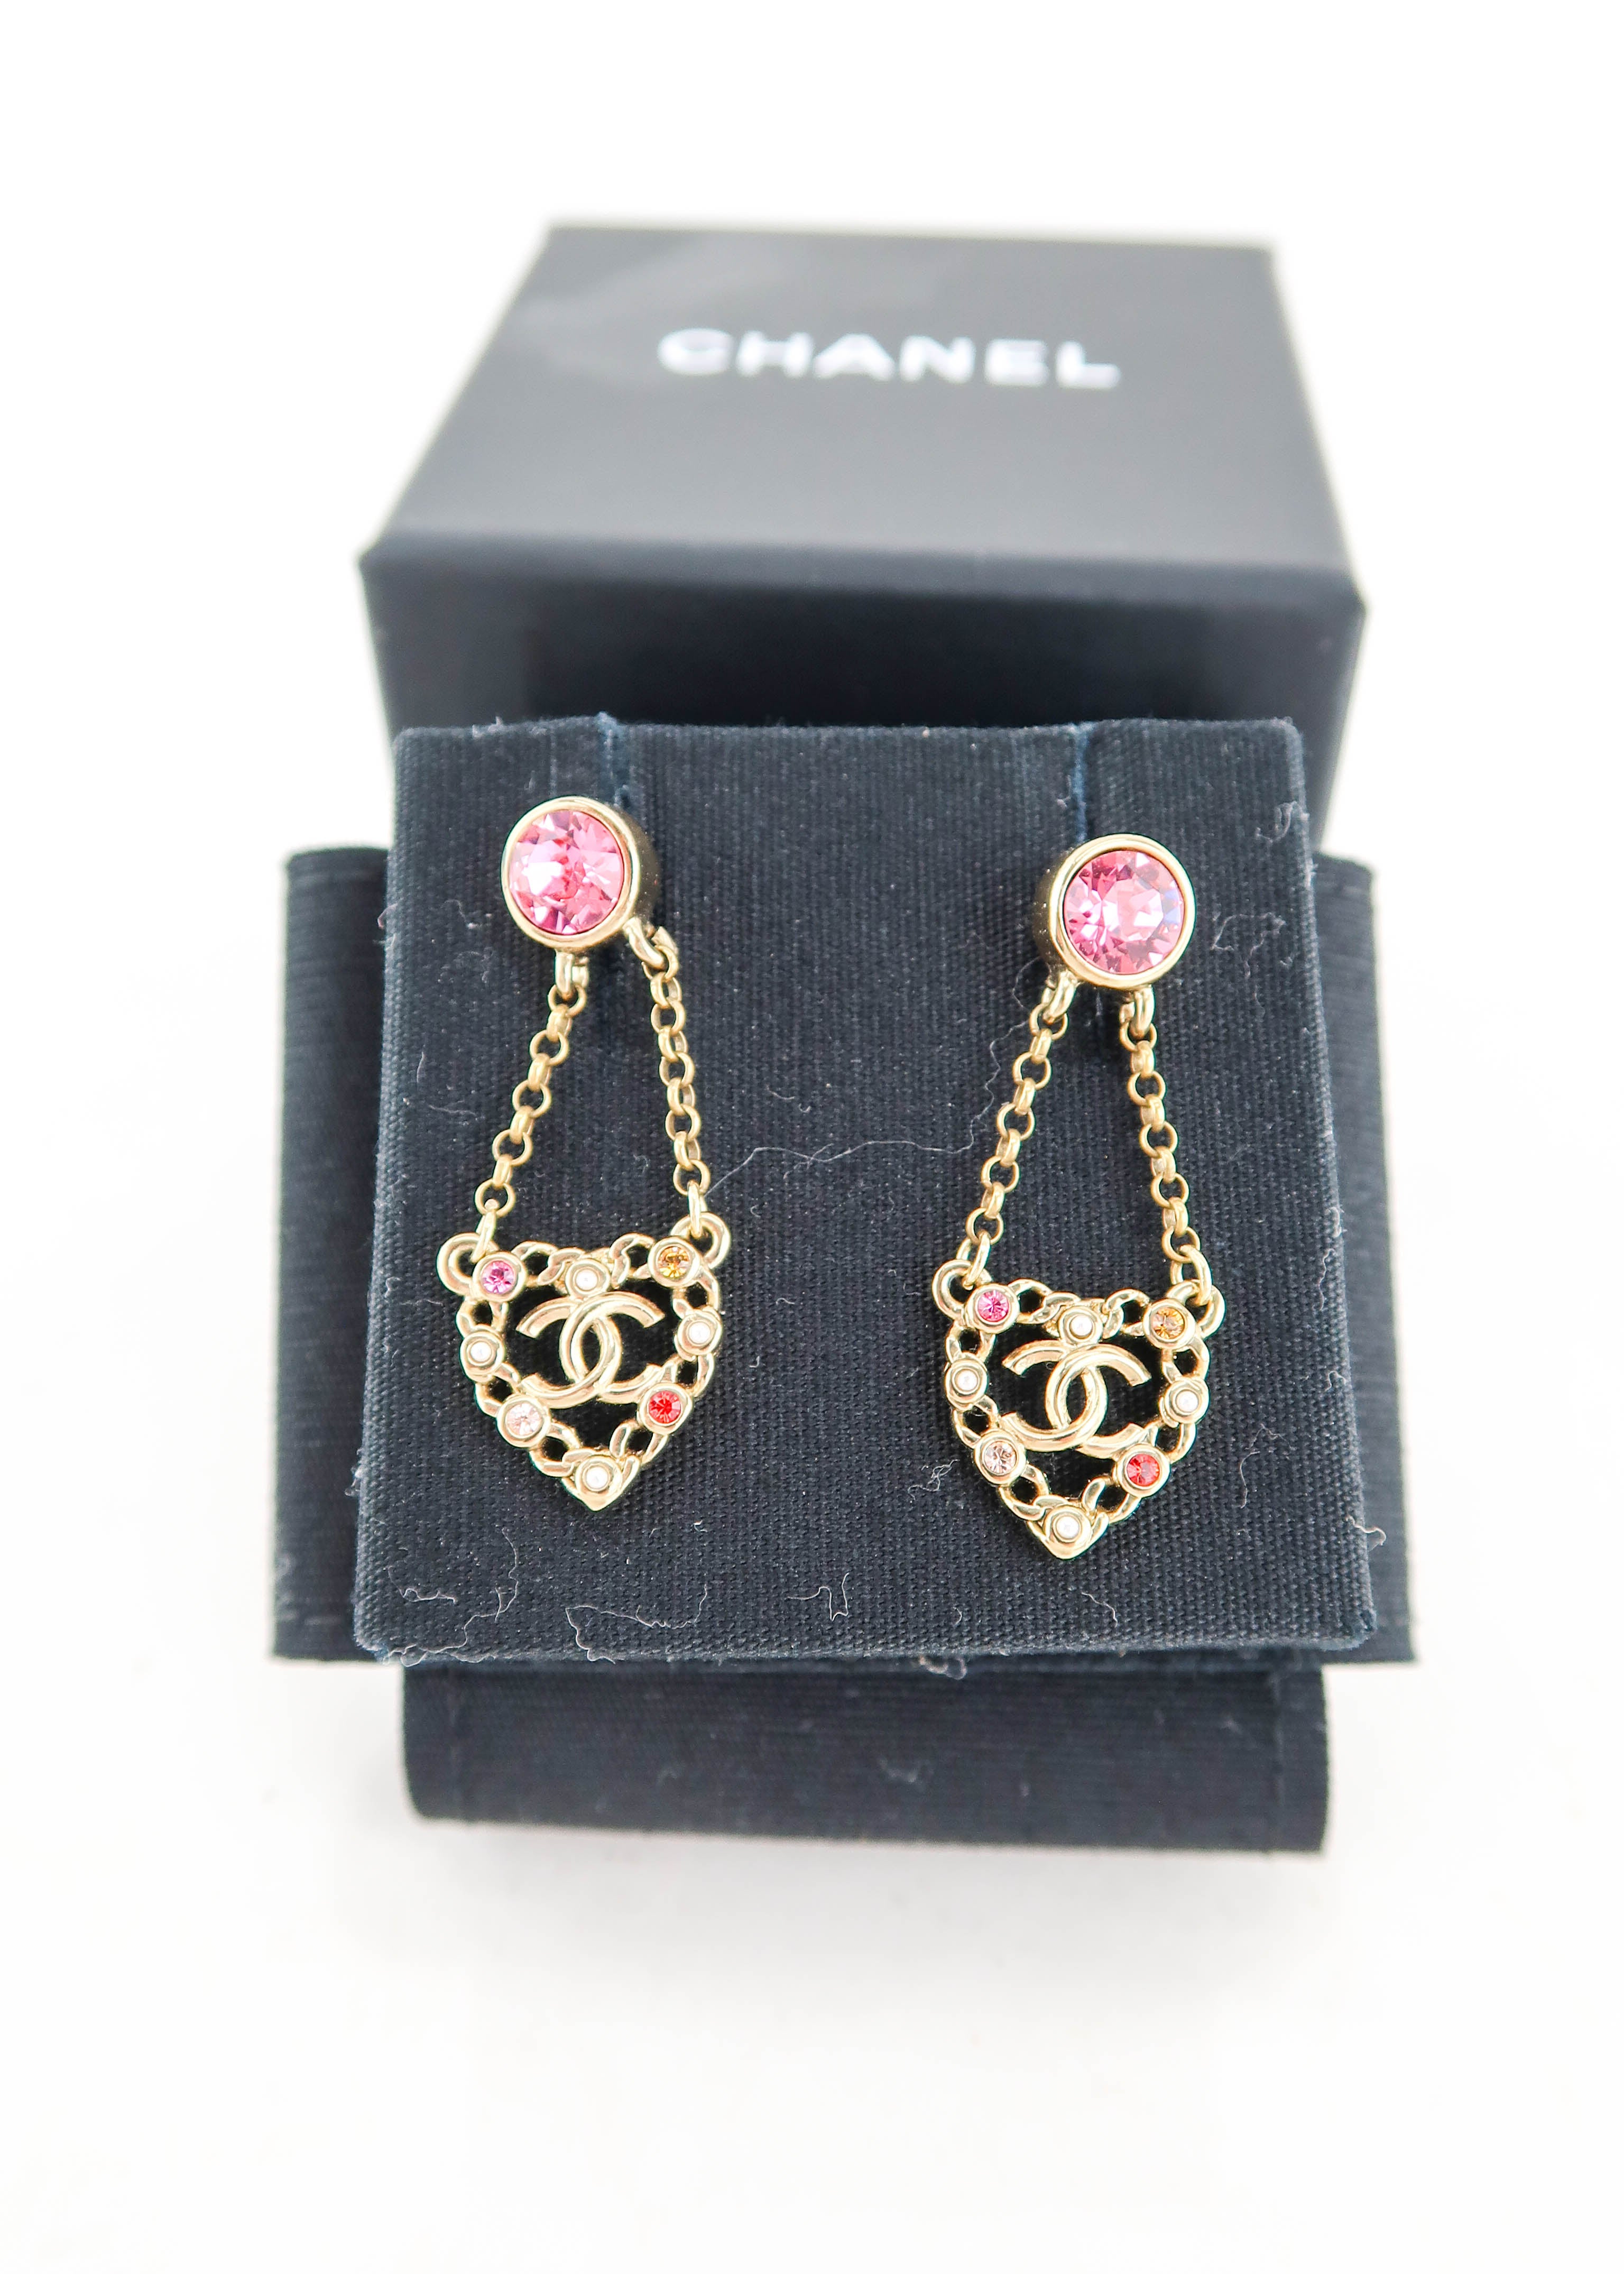 Chanel earrings bowknot - WJLUXURIES